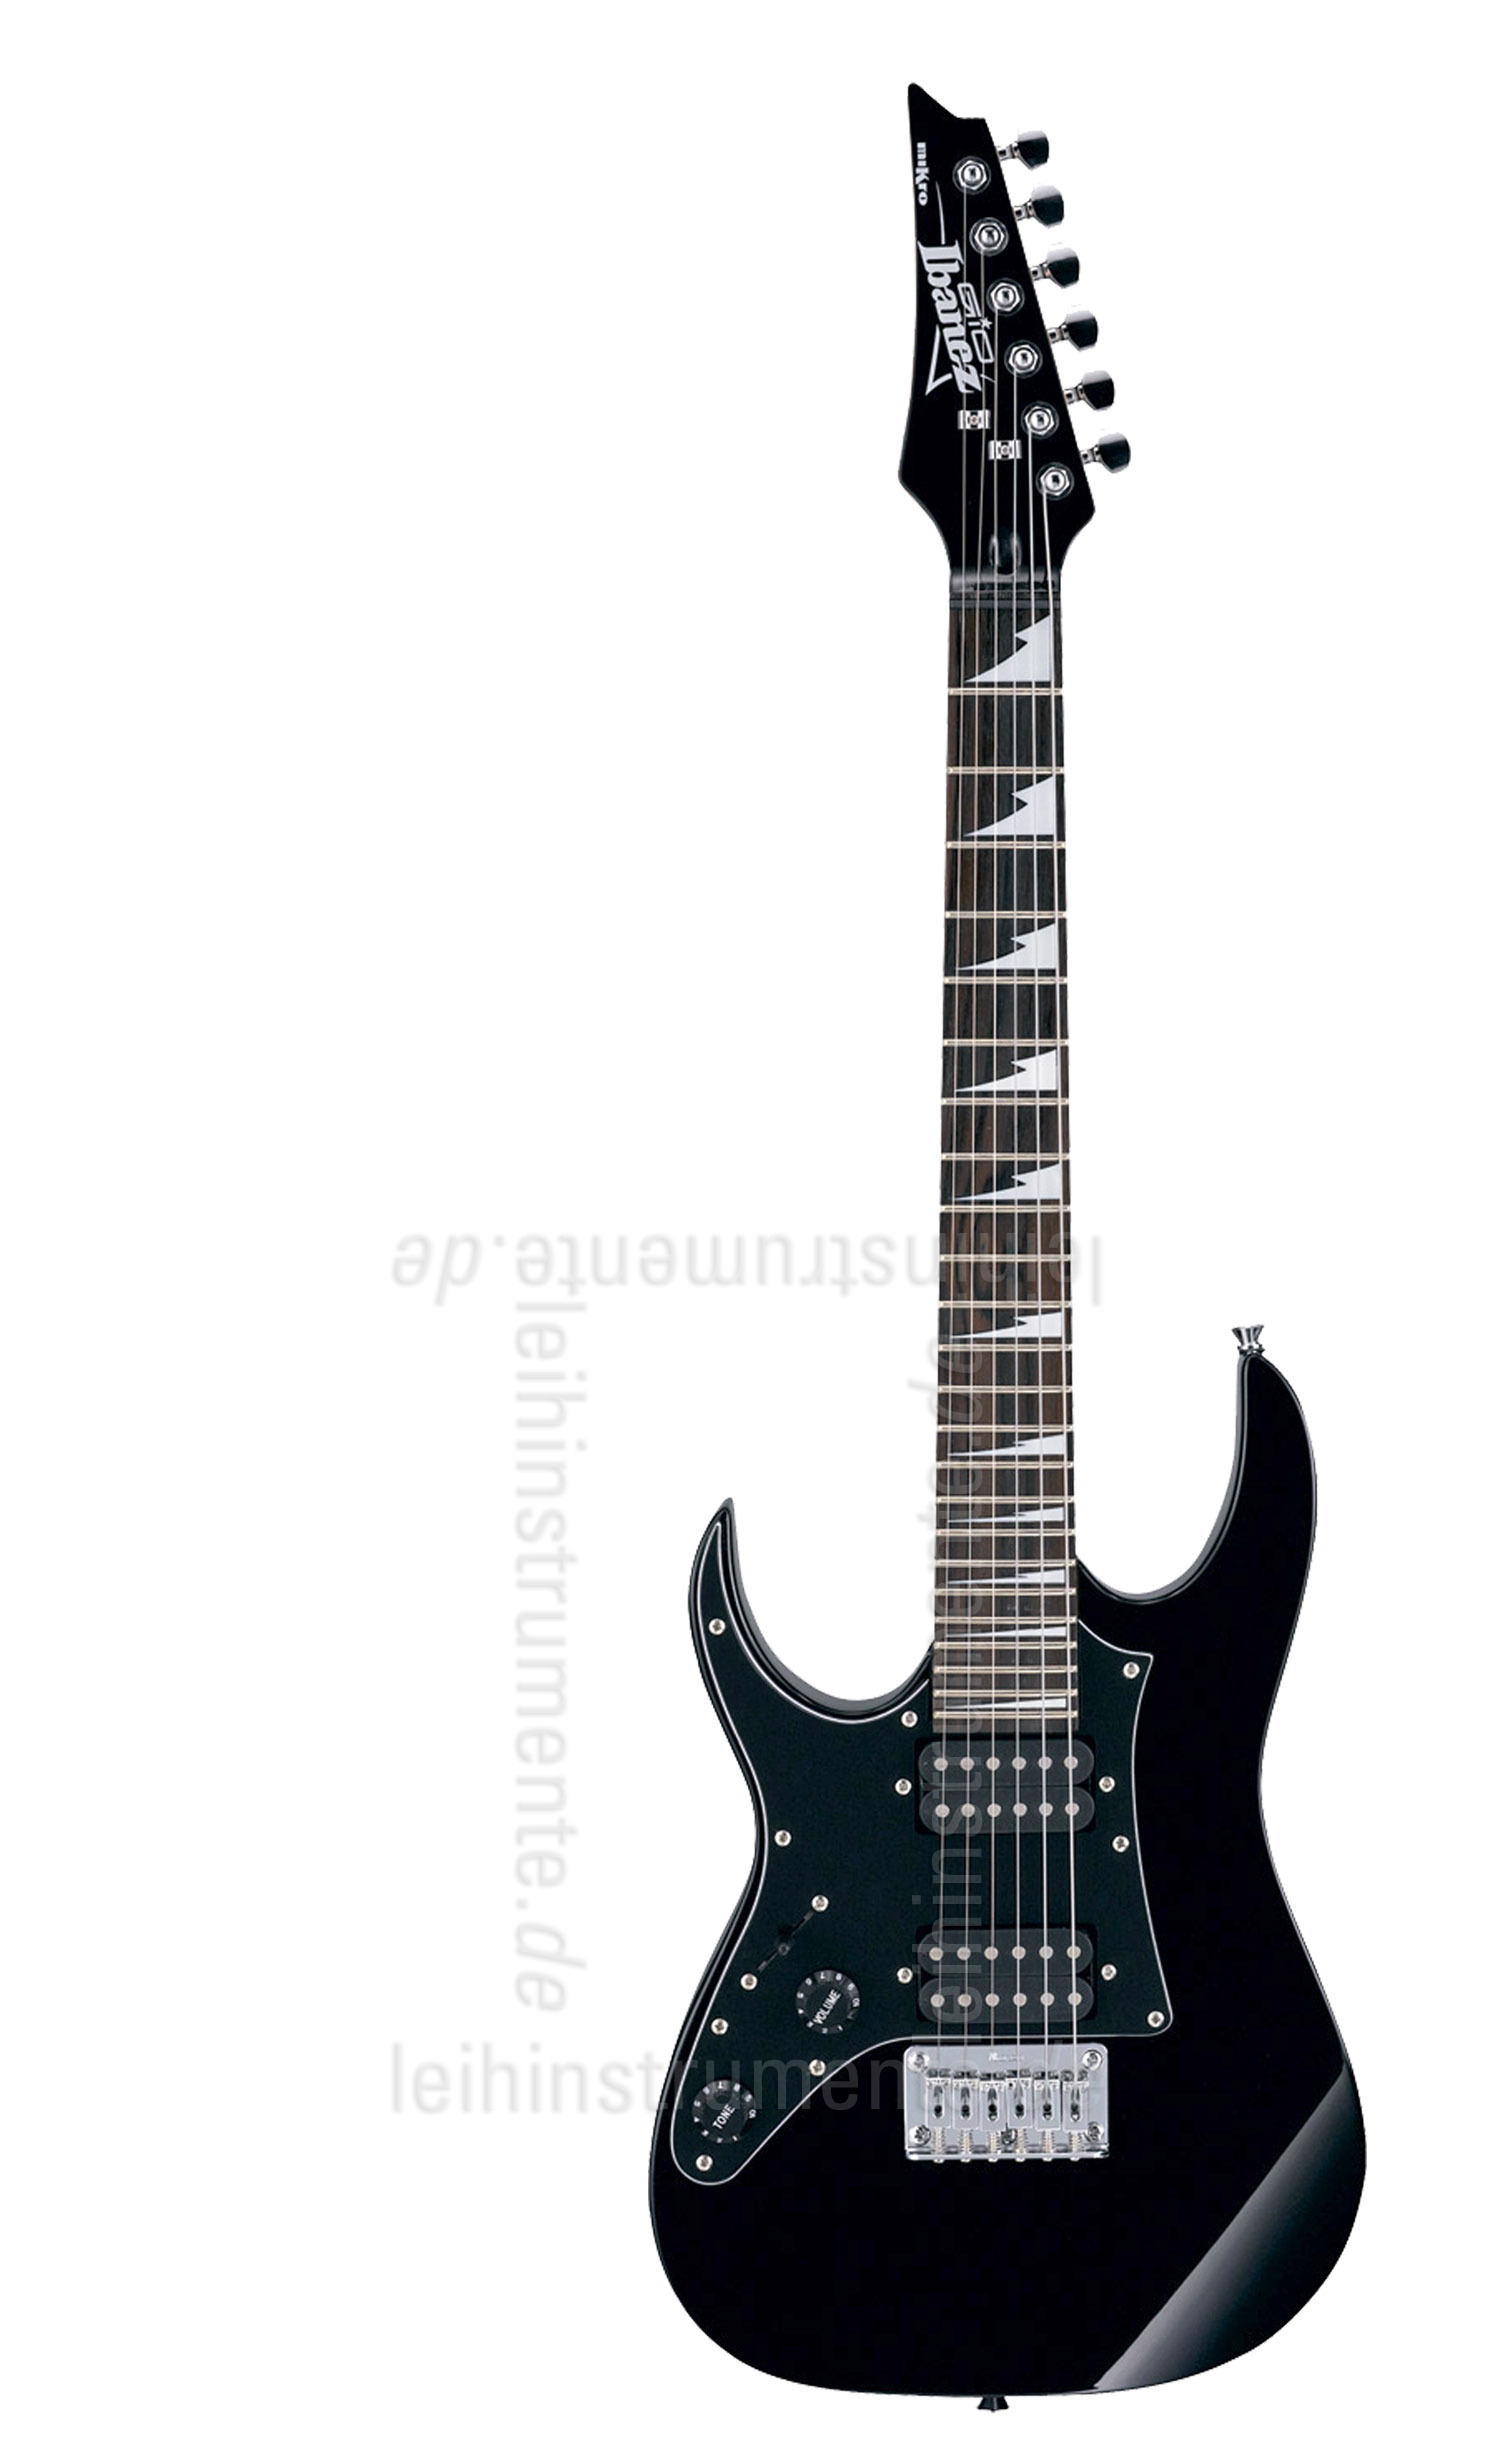 zur Artikelbeschreibung / Preis Linkshänder Kinder E-Gitarre 3/4  IBANEZ GRGM21L MIKRO Schwarz - Auch als Reisegitarre geeignet